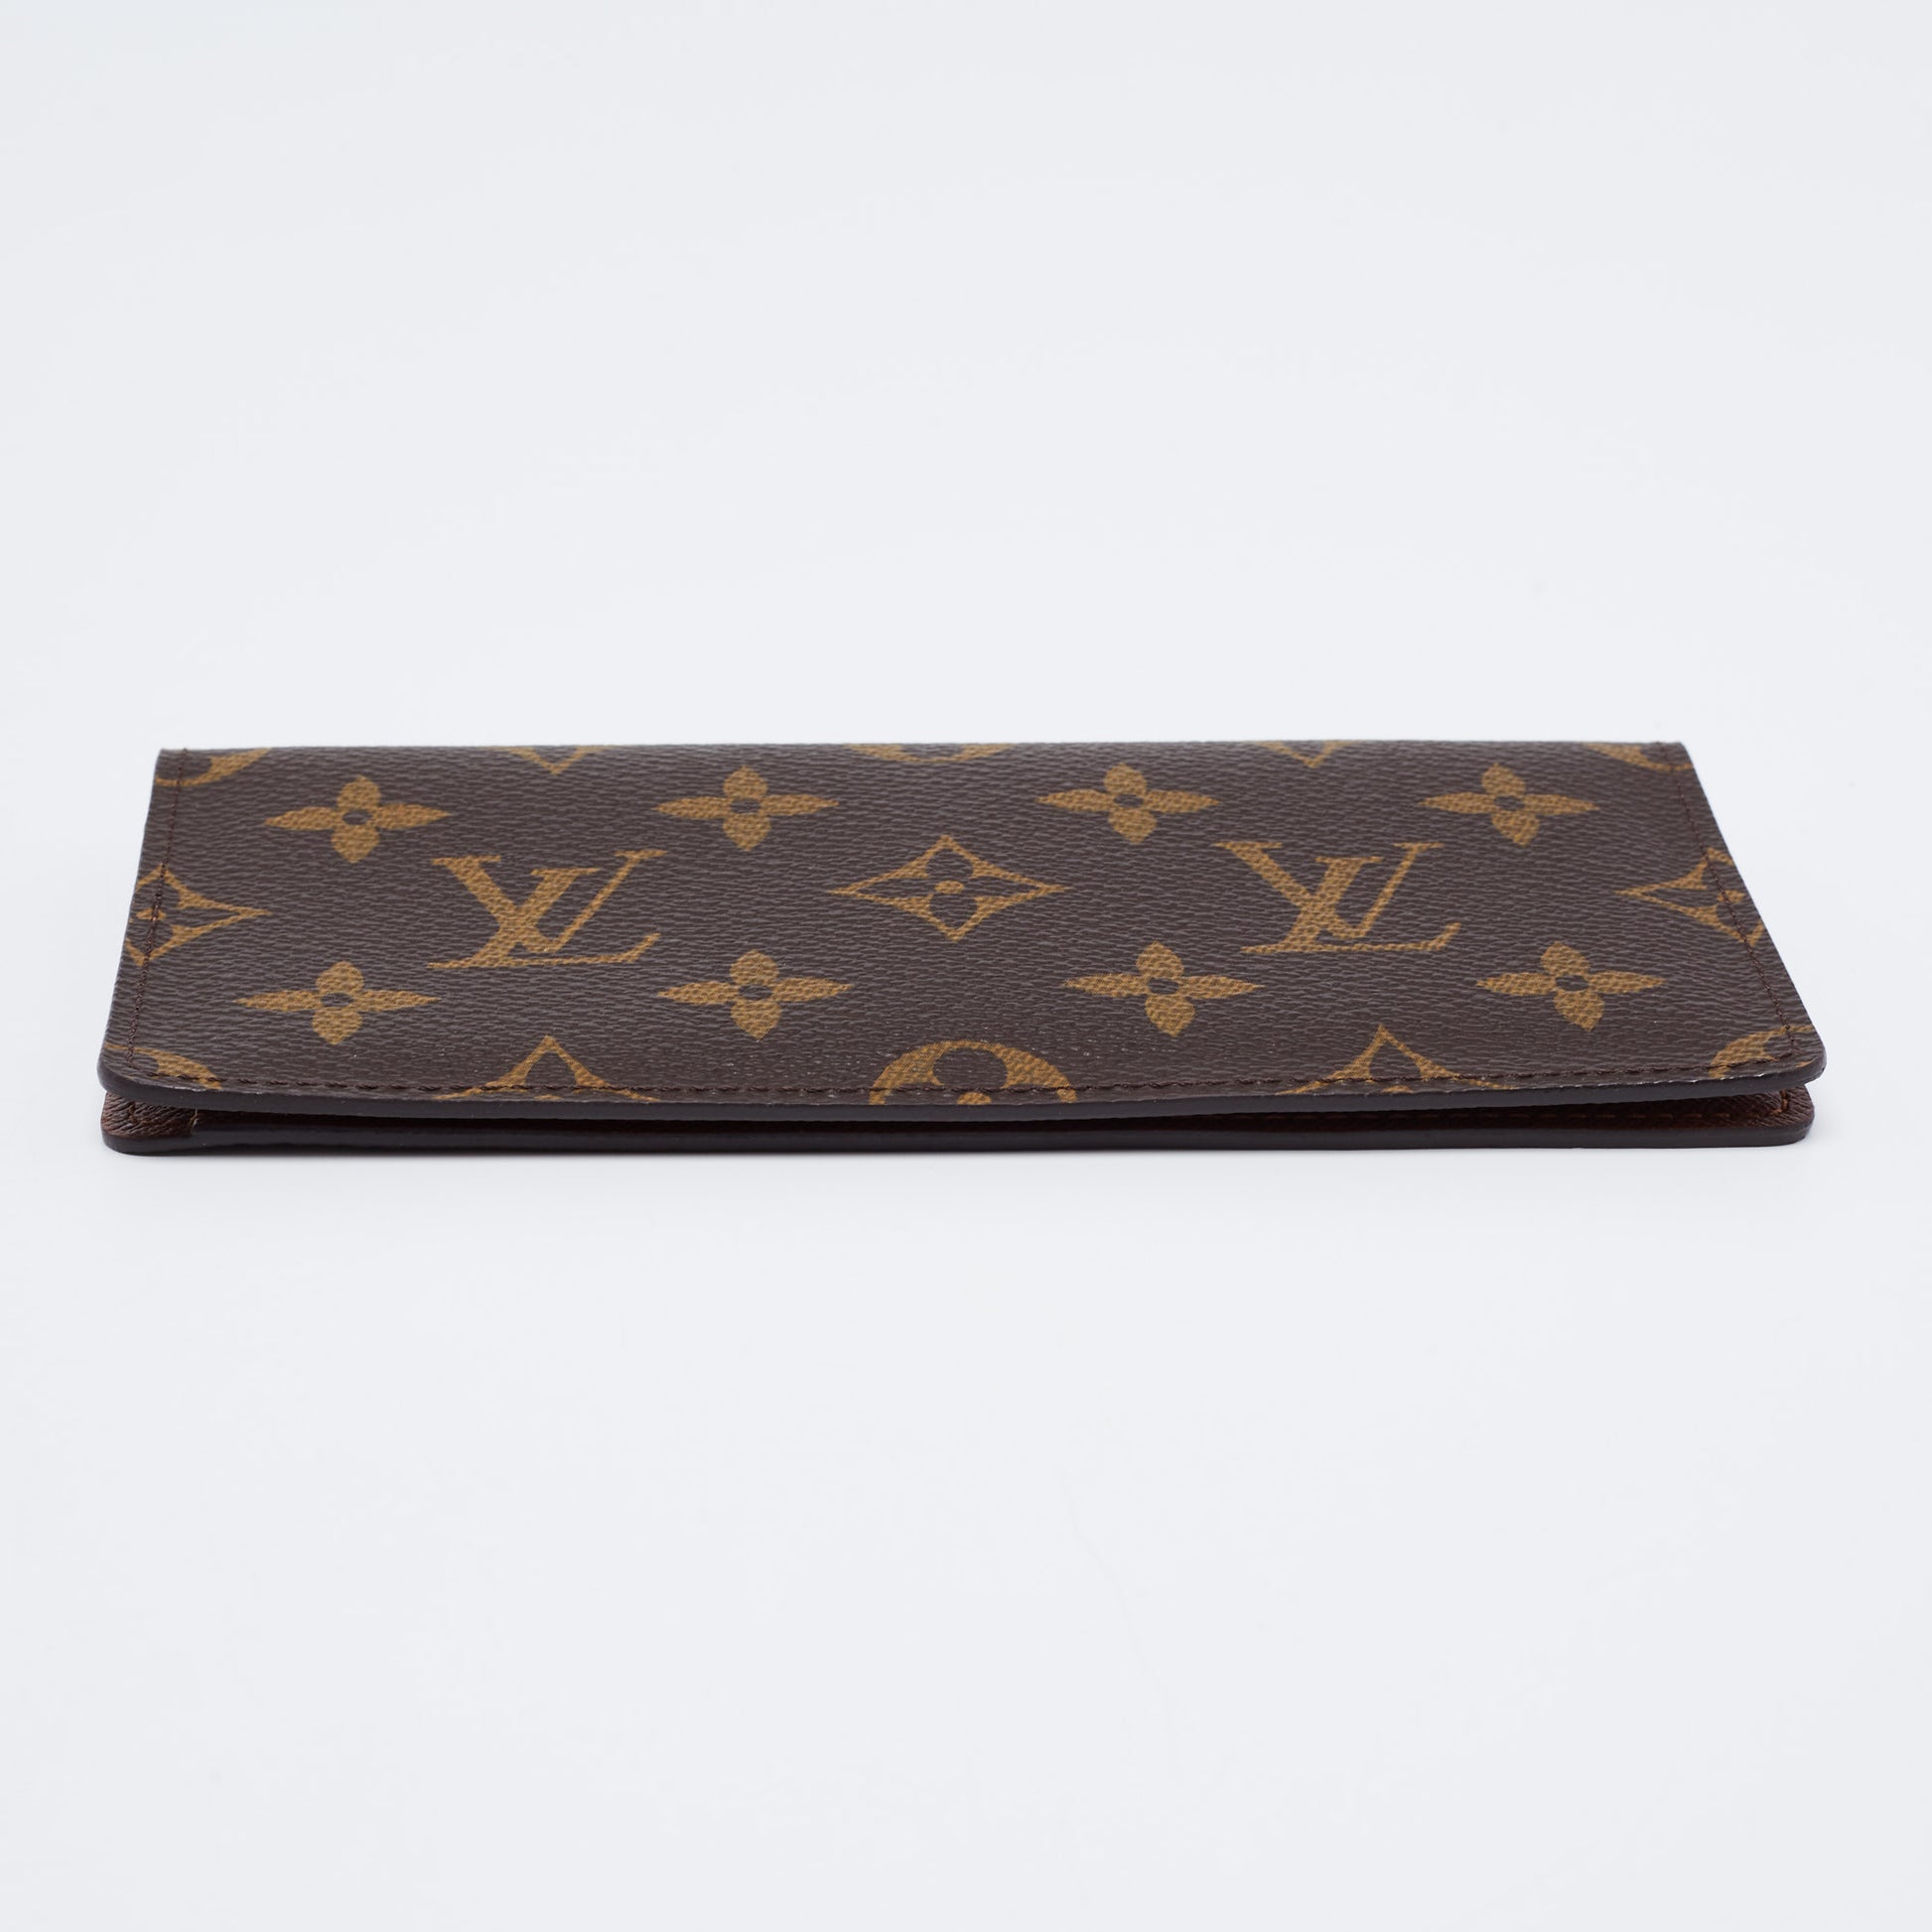 Louis Vuitton Checkbook Cover Monogram Canvas - ShopStyle Wallets